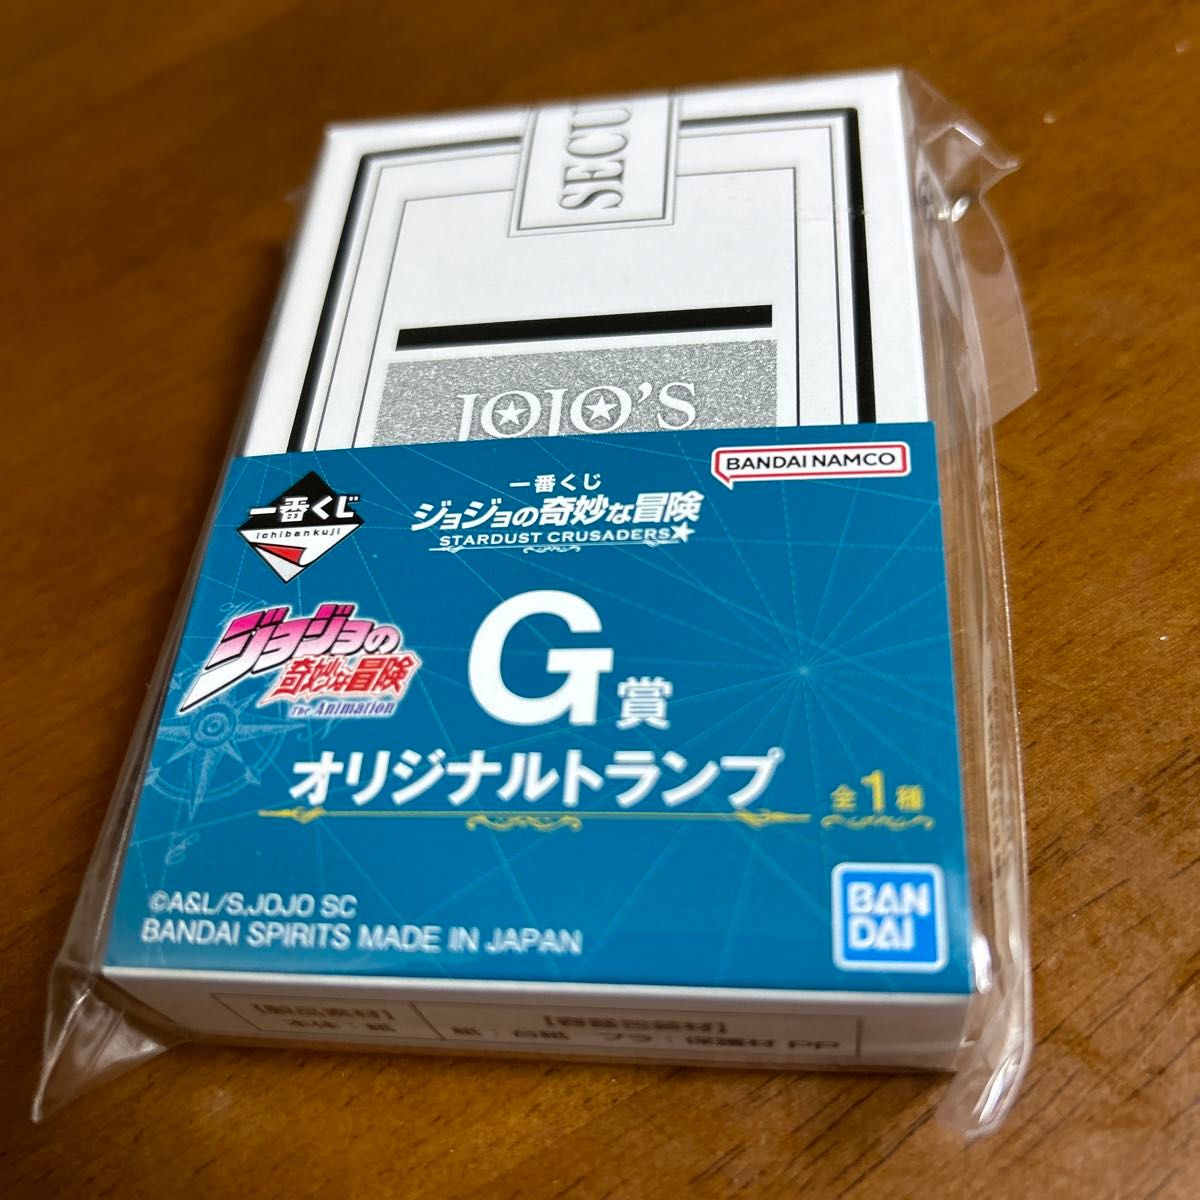 ジョジョの奇妙な冒険 一番くじ G賞 オリジナルトランプ - トランプ